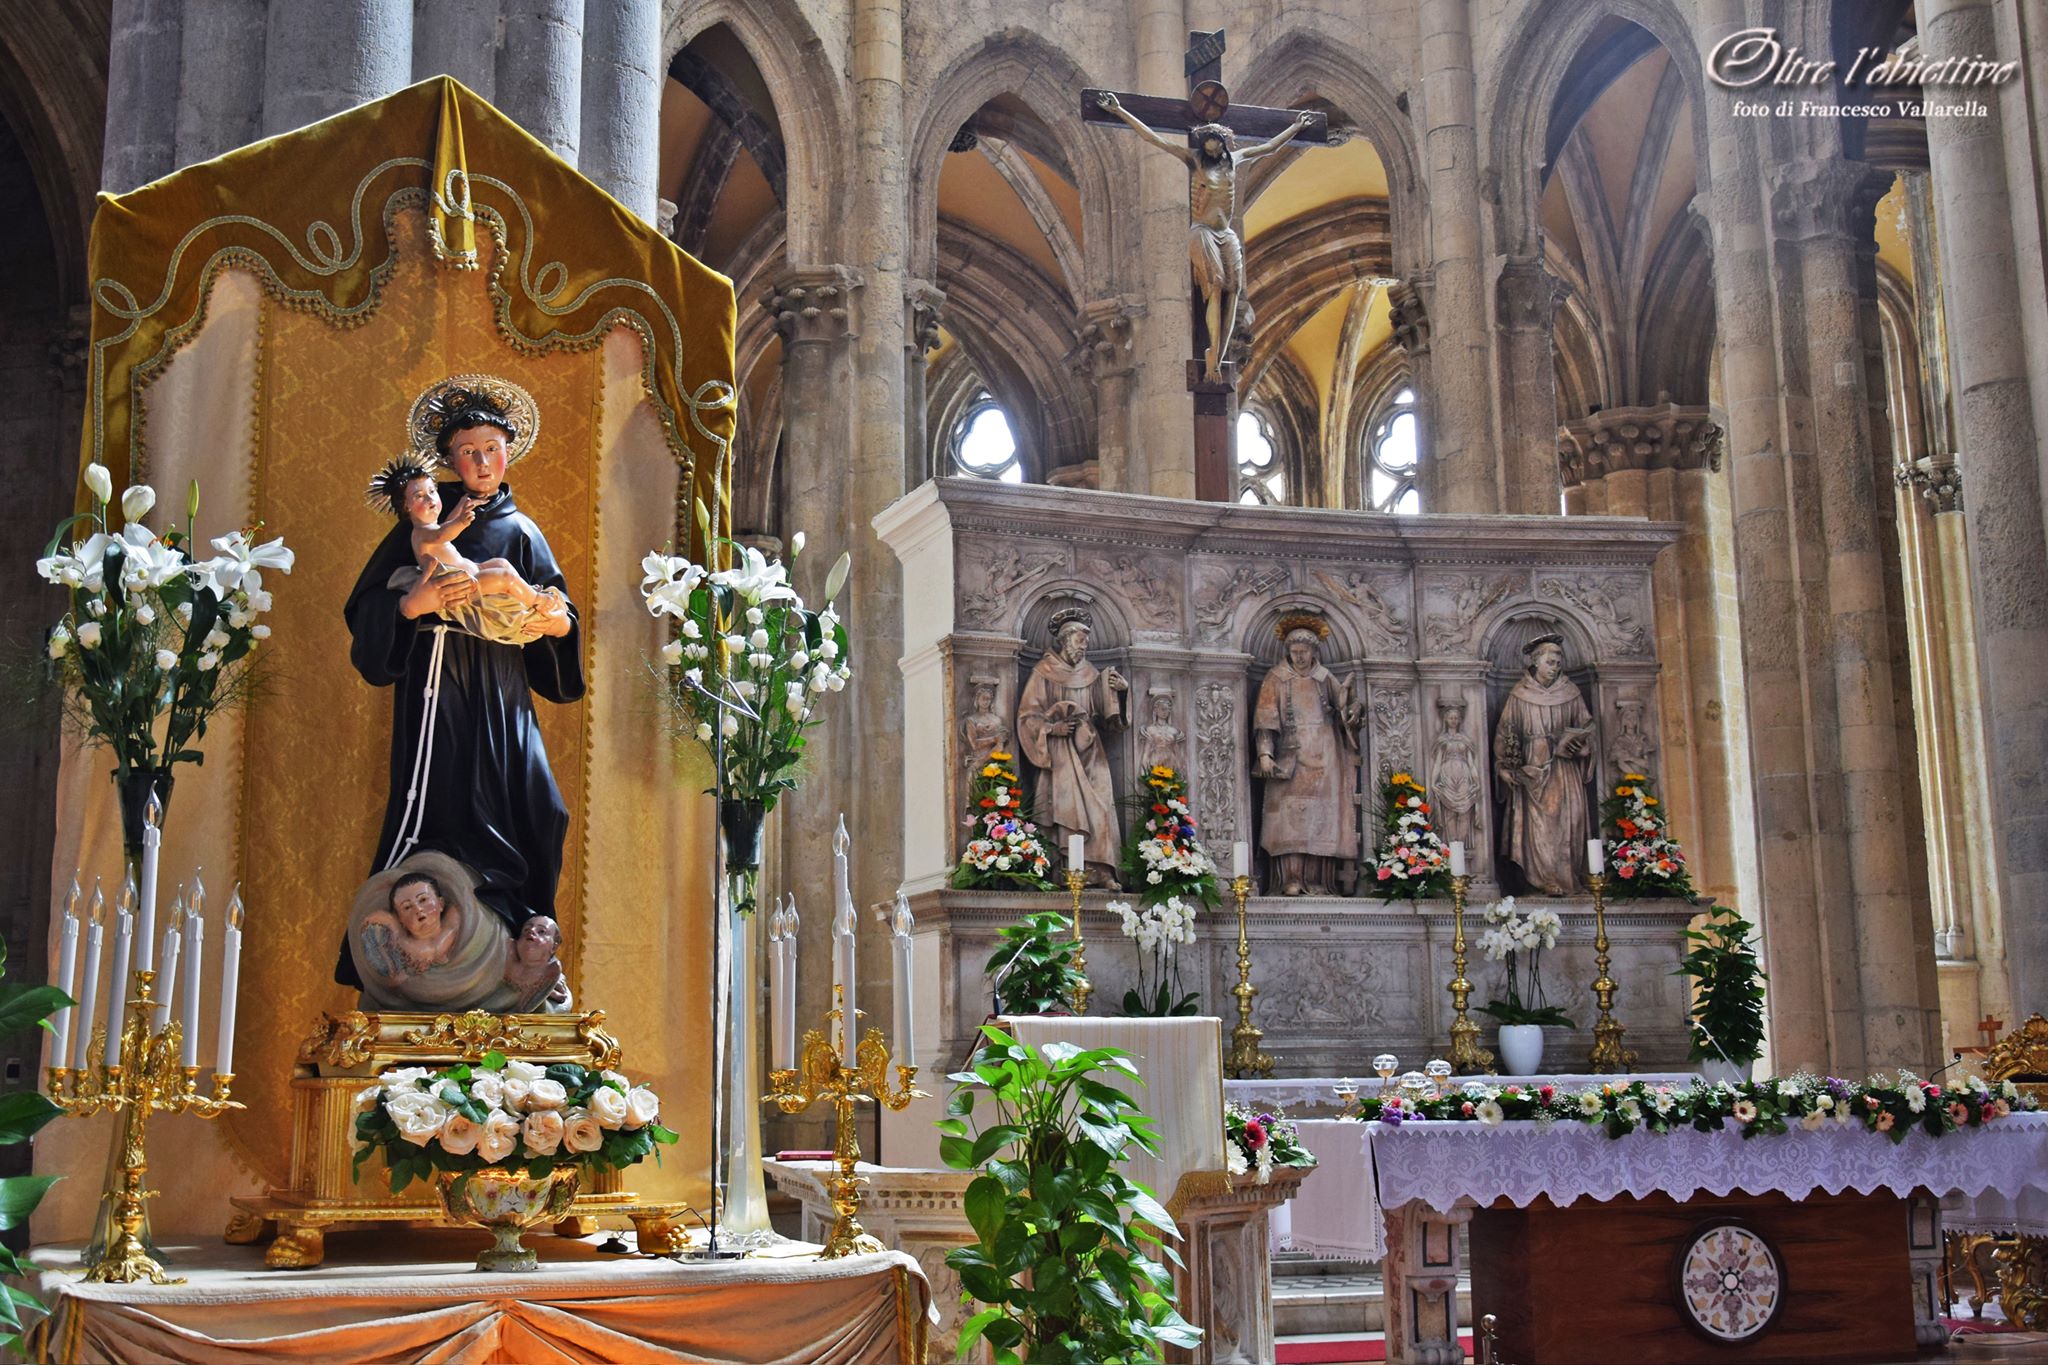 Napoli festeggia Sant’Antonio: gli eventi nella Basilica di San Lorenzo